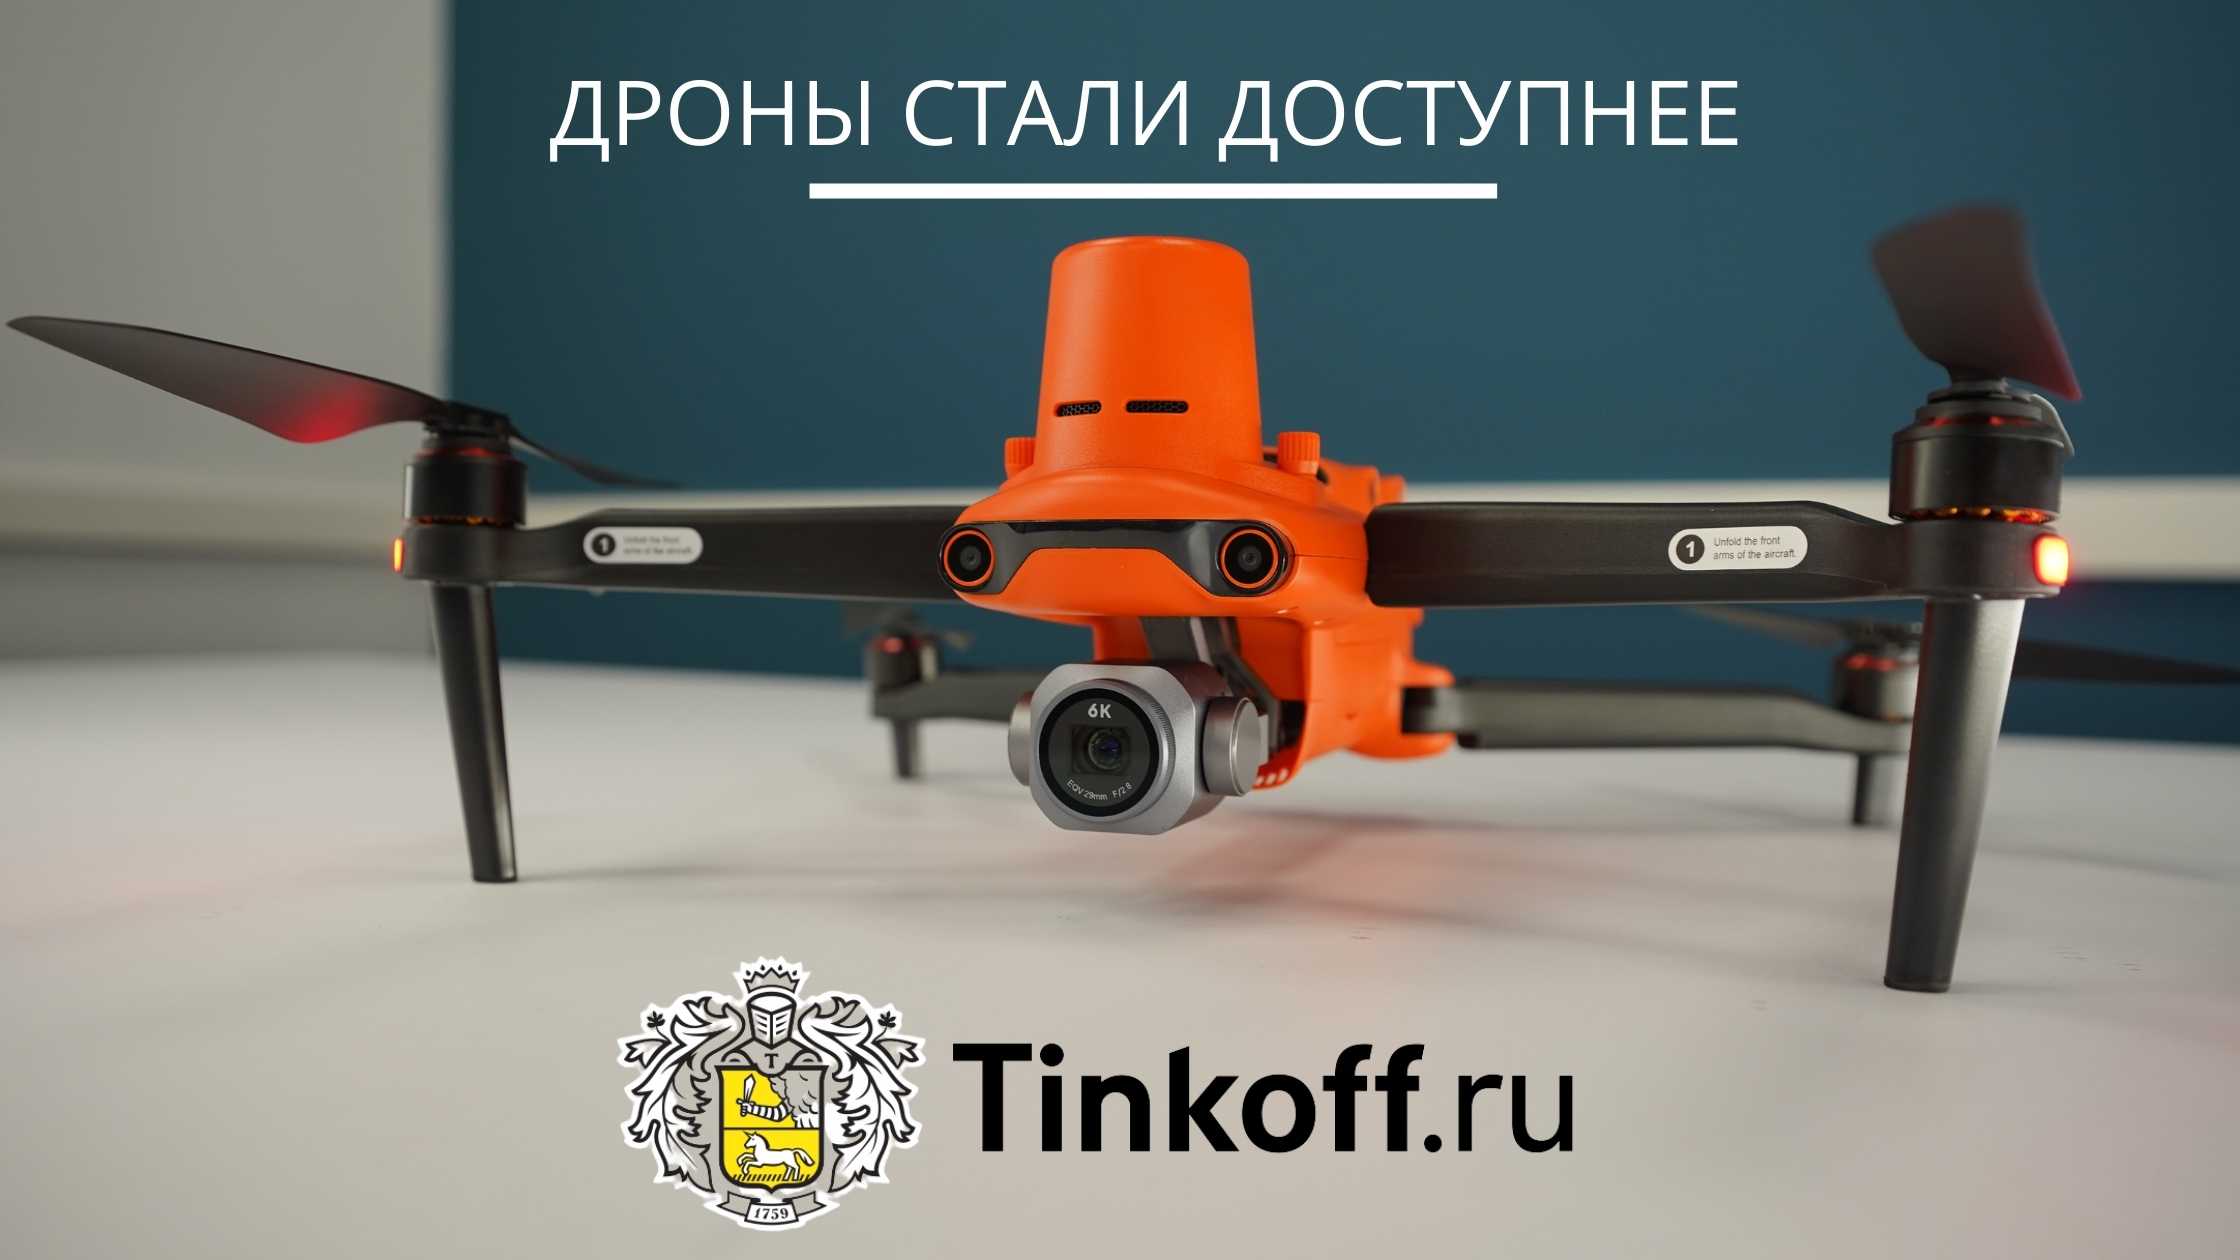 Кредиты от «Тинькофф» на покупку дронов - дрон в лизинг